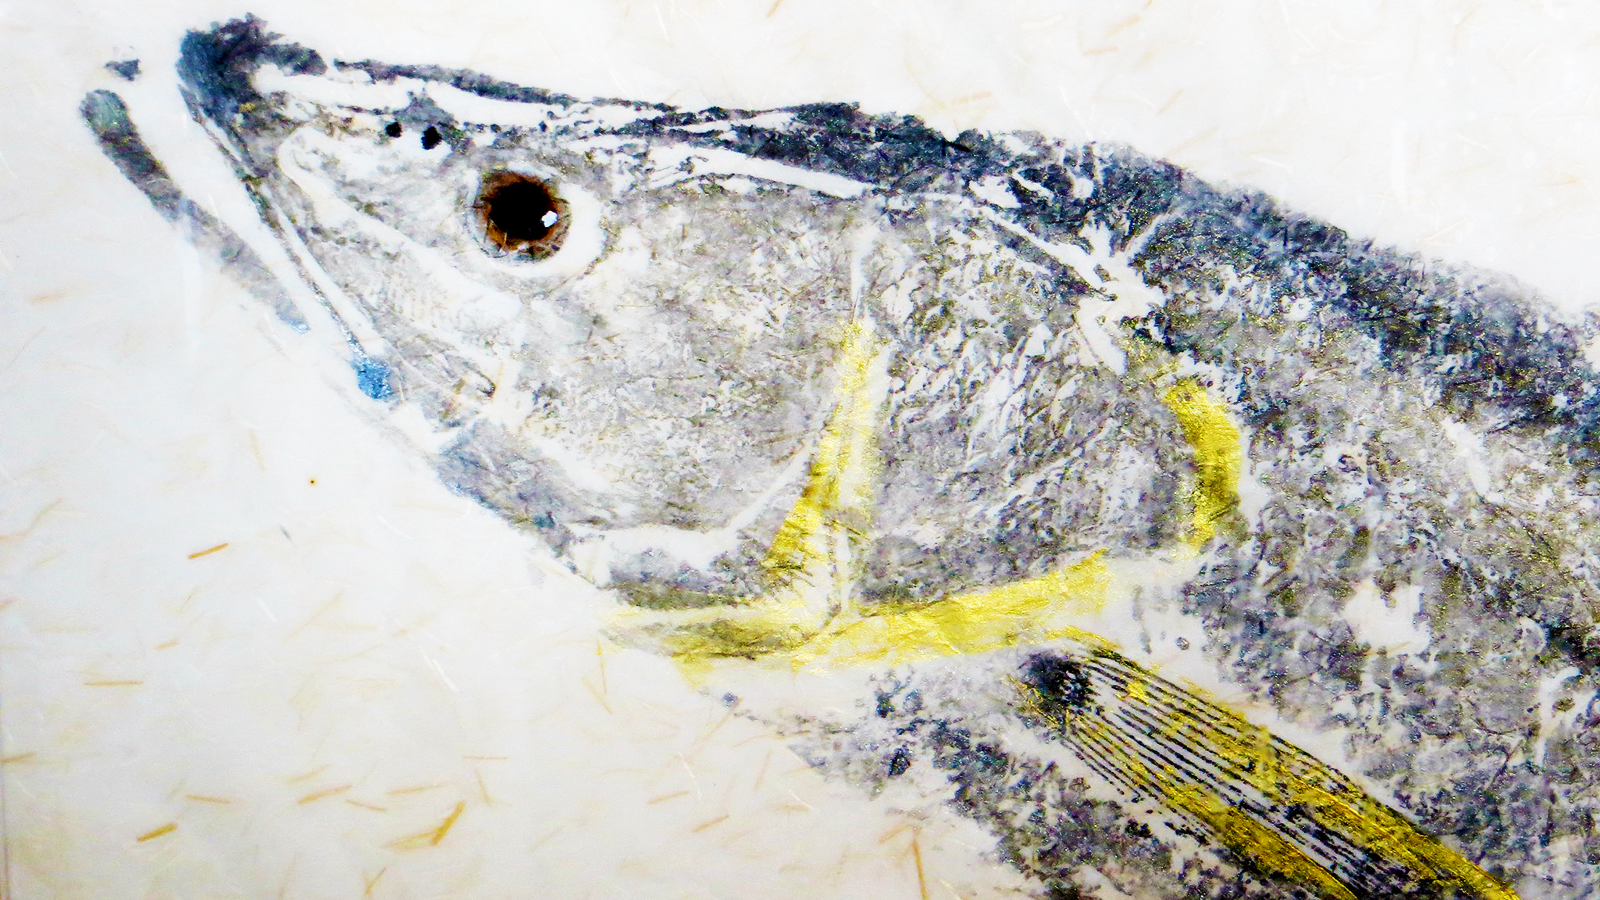 Gyotaku Fish Printing